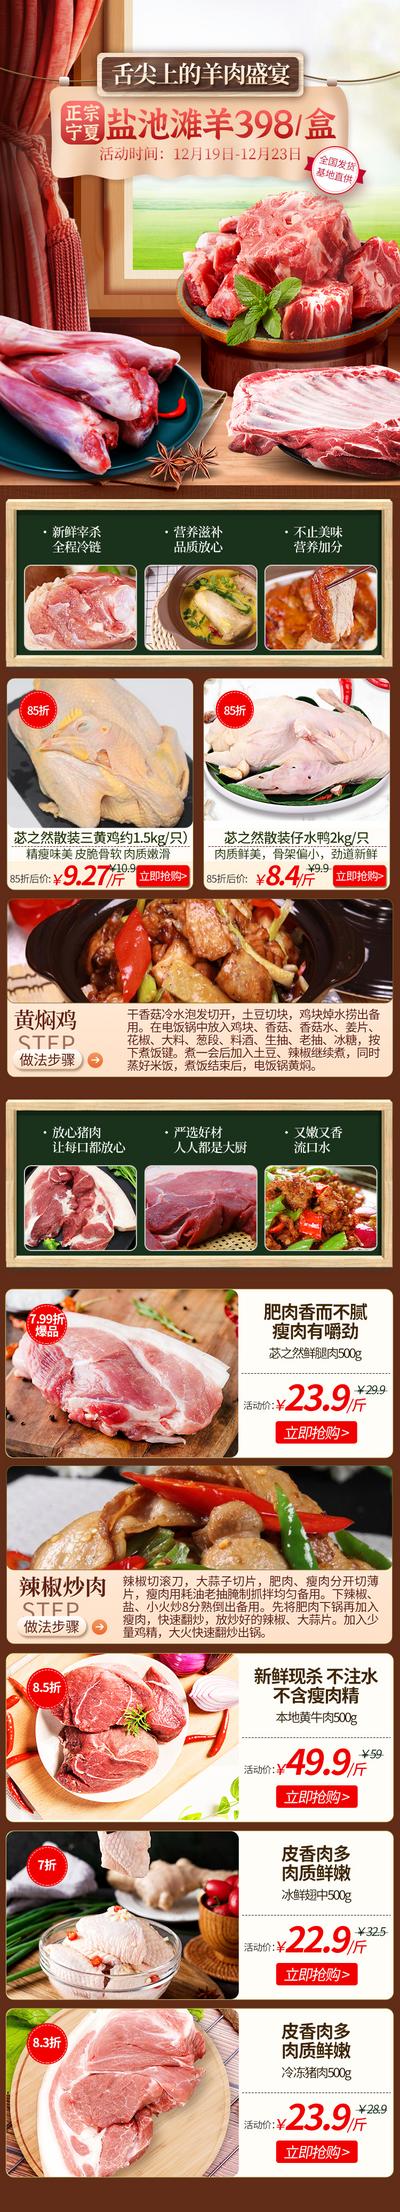 南门网 电商首页 淘宝首页 生鲜 羊肉 社区 团购 中国风 活动 优惠